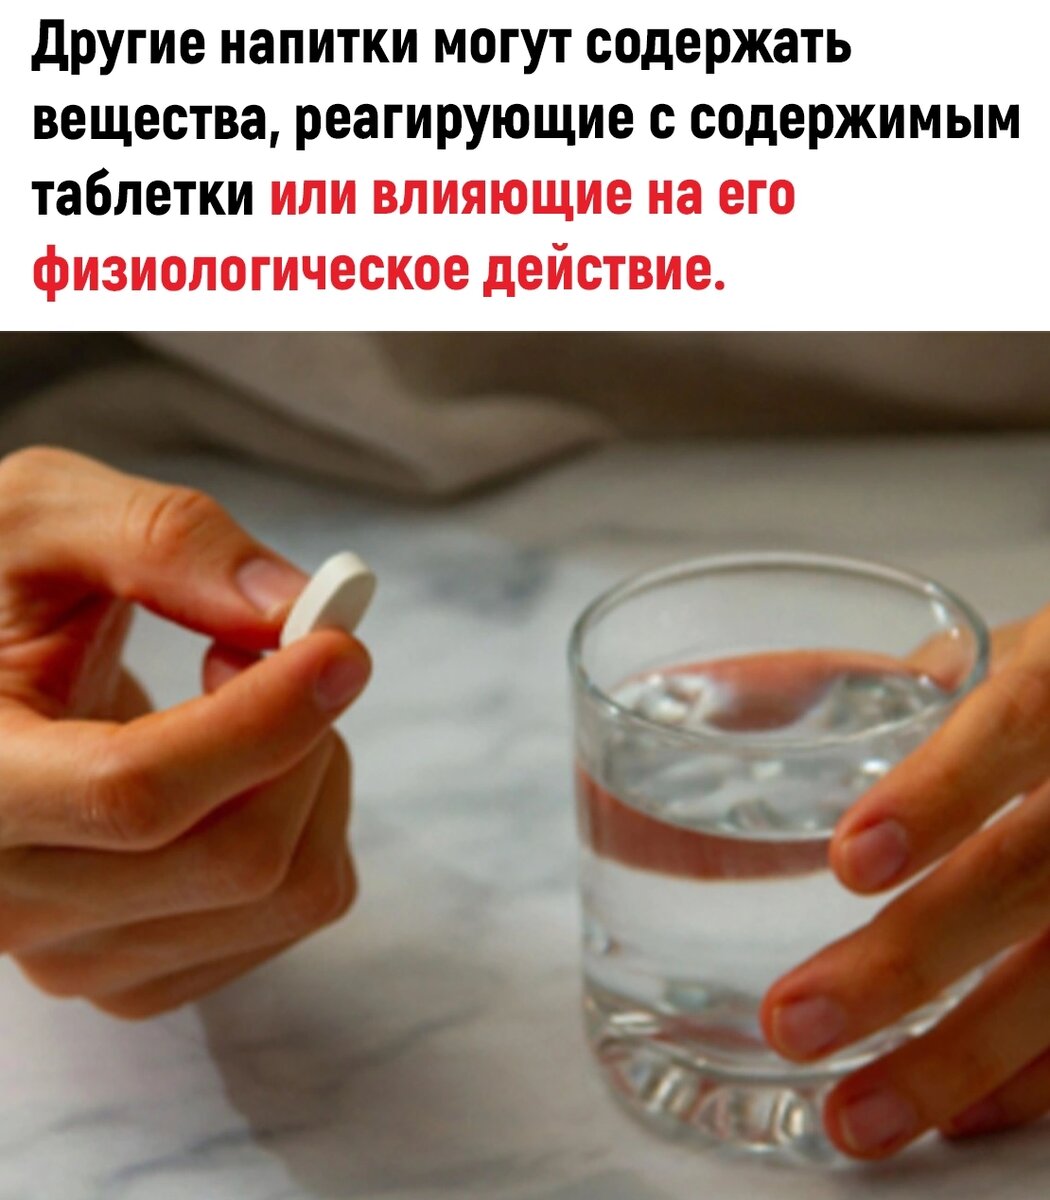 Сироп надо запивать водой. Почему нужно запивать таблетки водой. Почему лекарство надо запивать водой. Почему таблетки надо запивать водой. Почему таблетки нужно запивать именно водой.